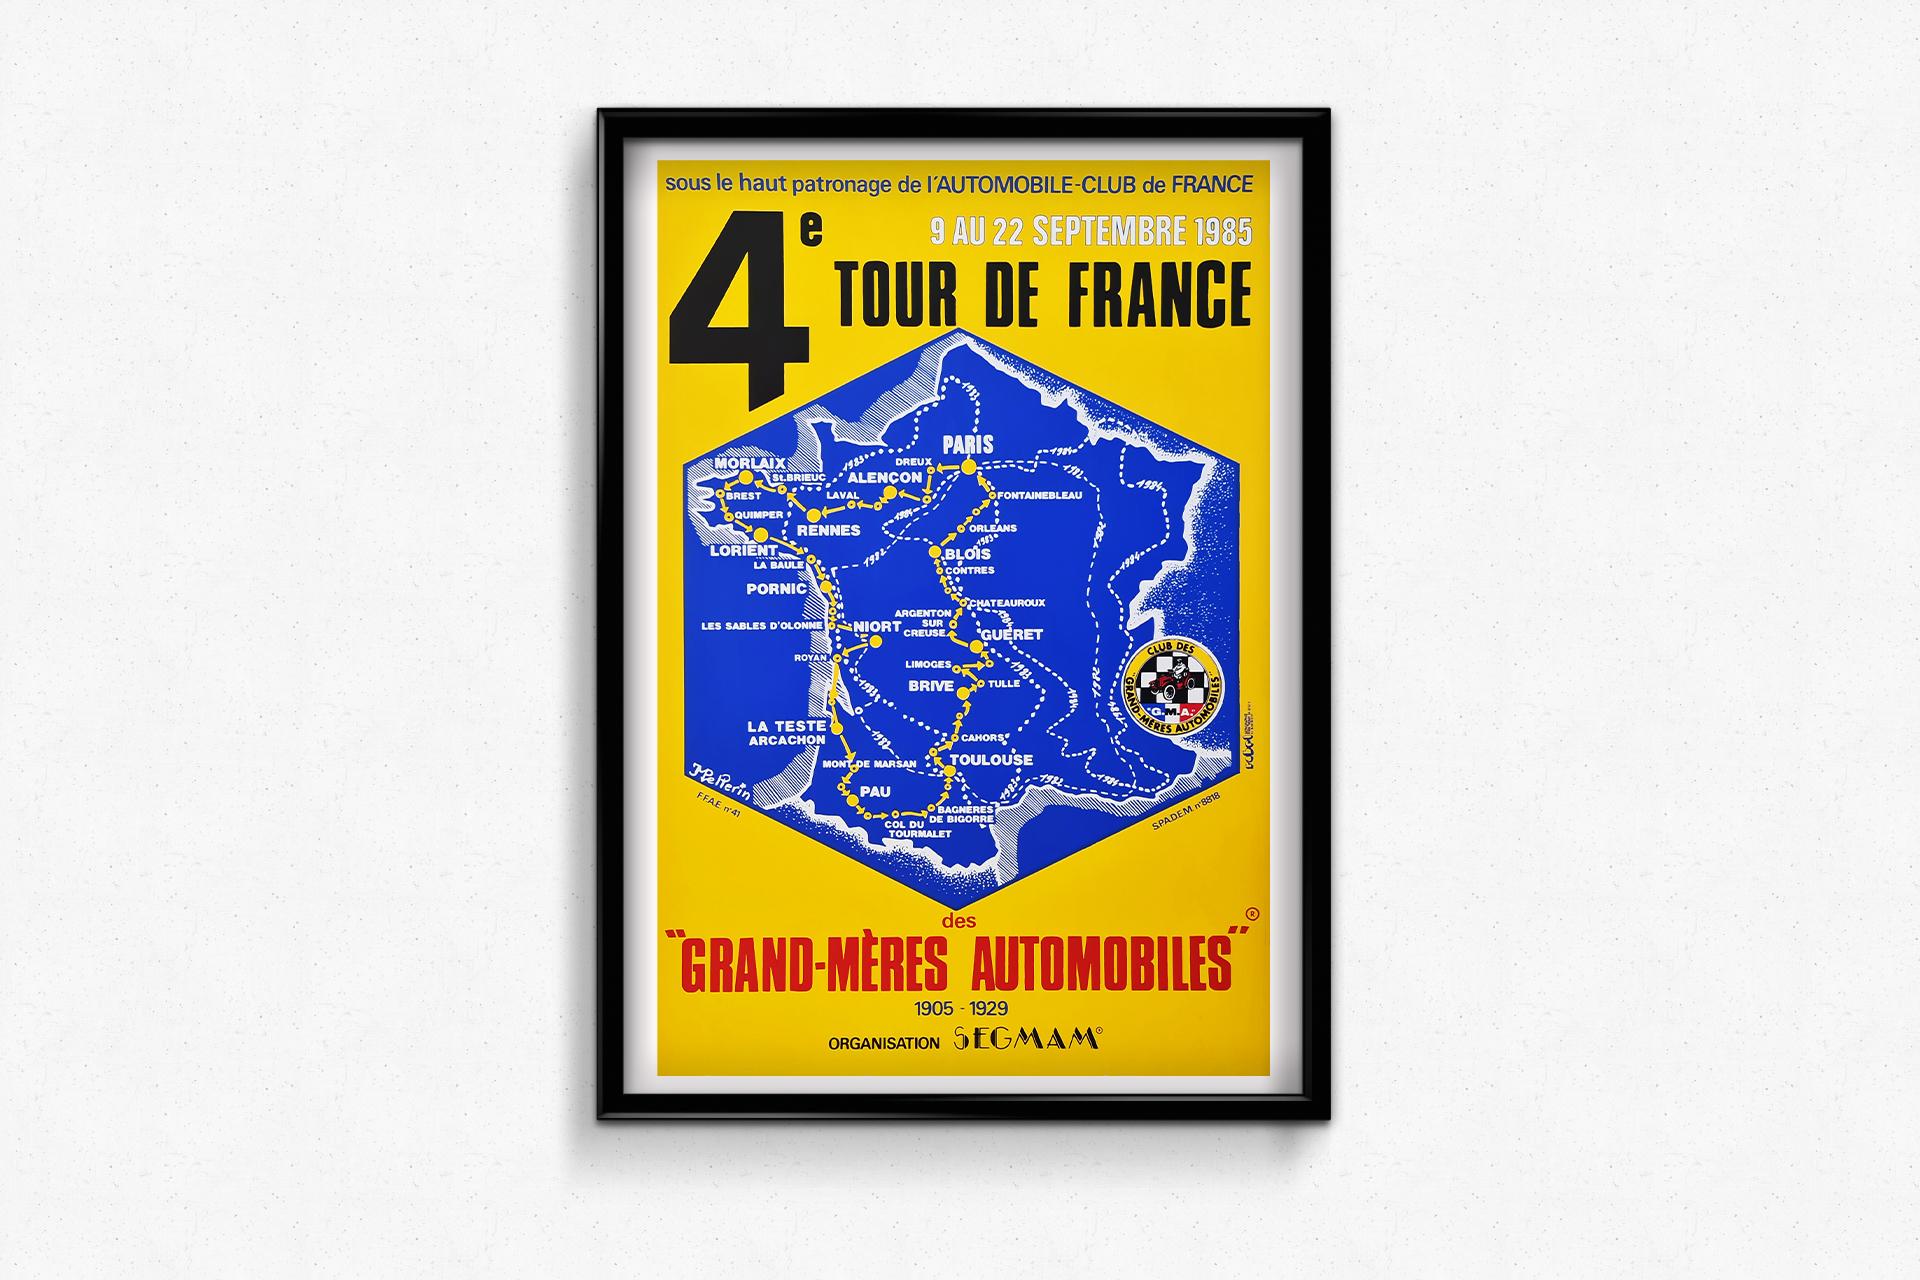 L'affiche avait pour but de promouvoir le 4e Tour de France des 